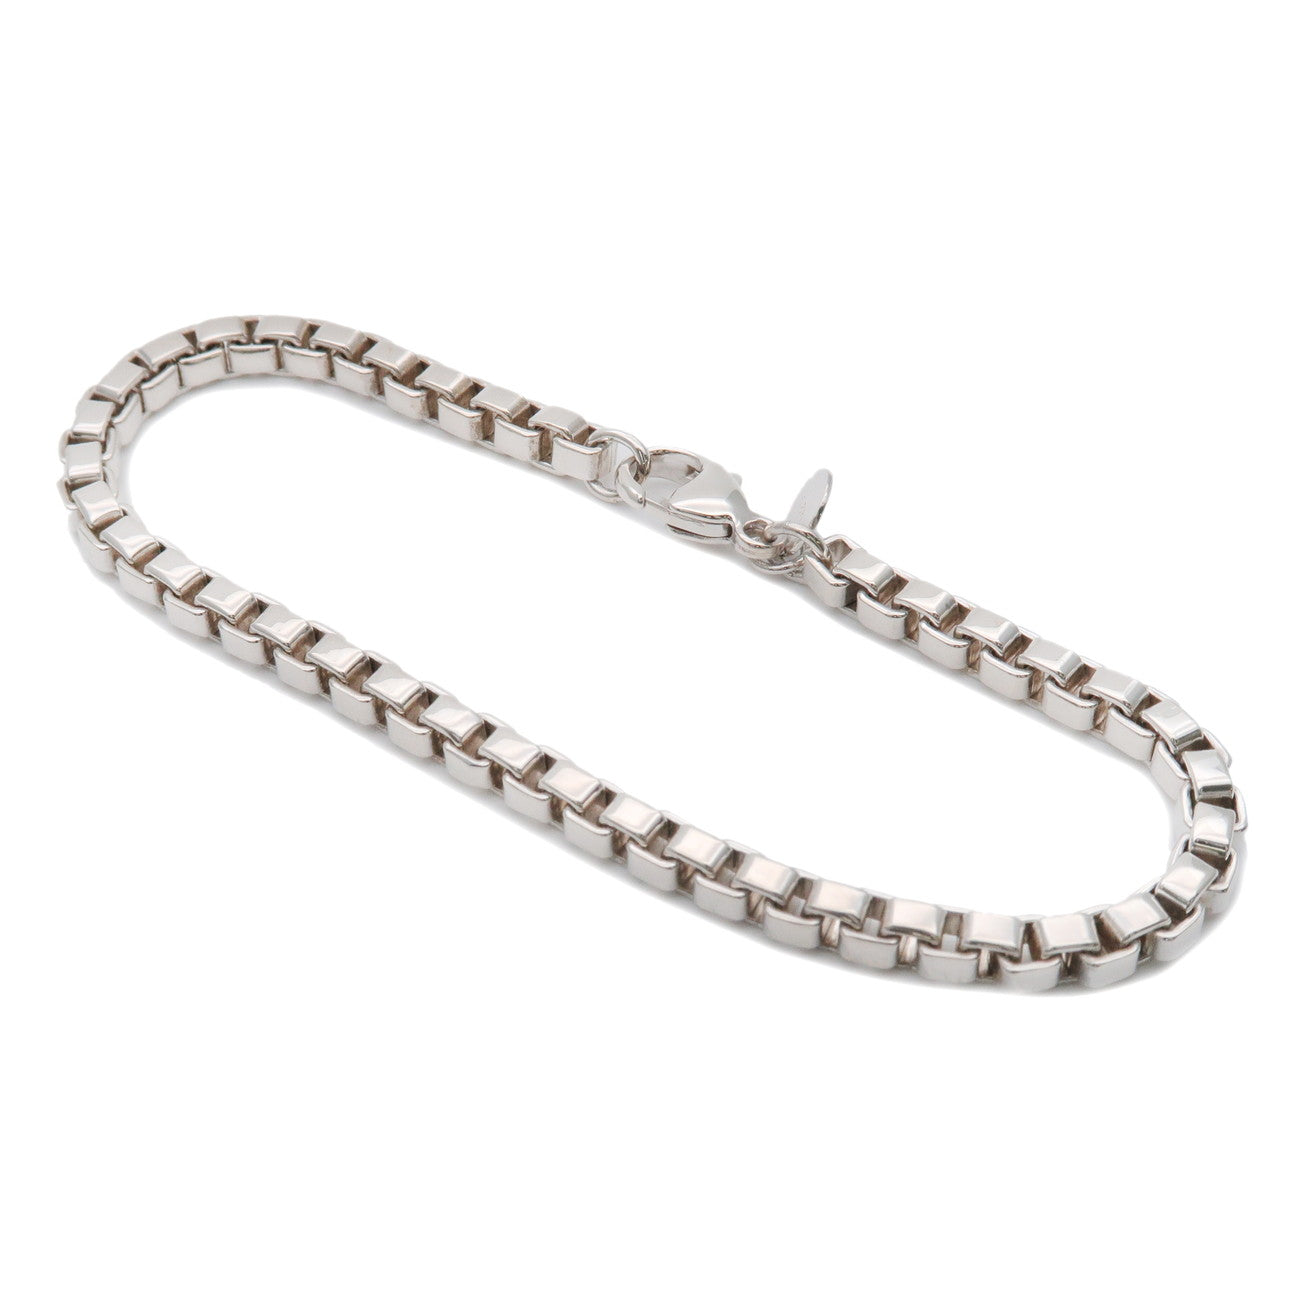 Tiffany&Co.-Venetian-Link-Bracelet-SV925-Silver-925 – dct